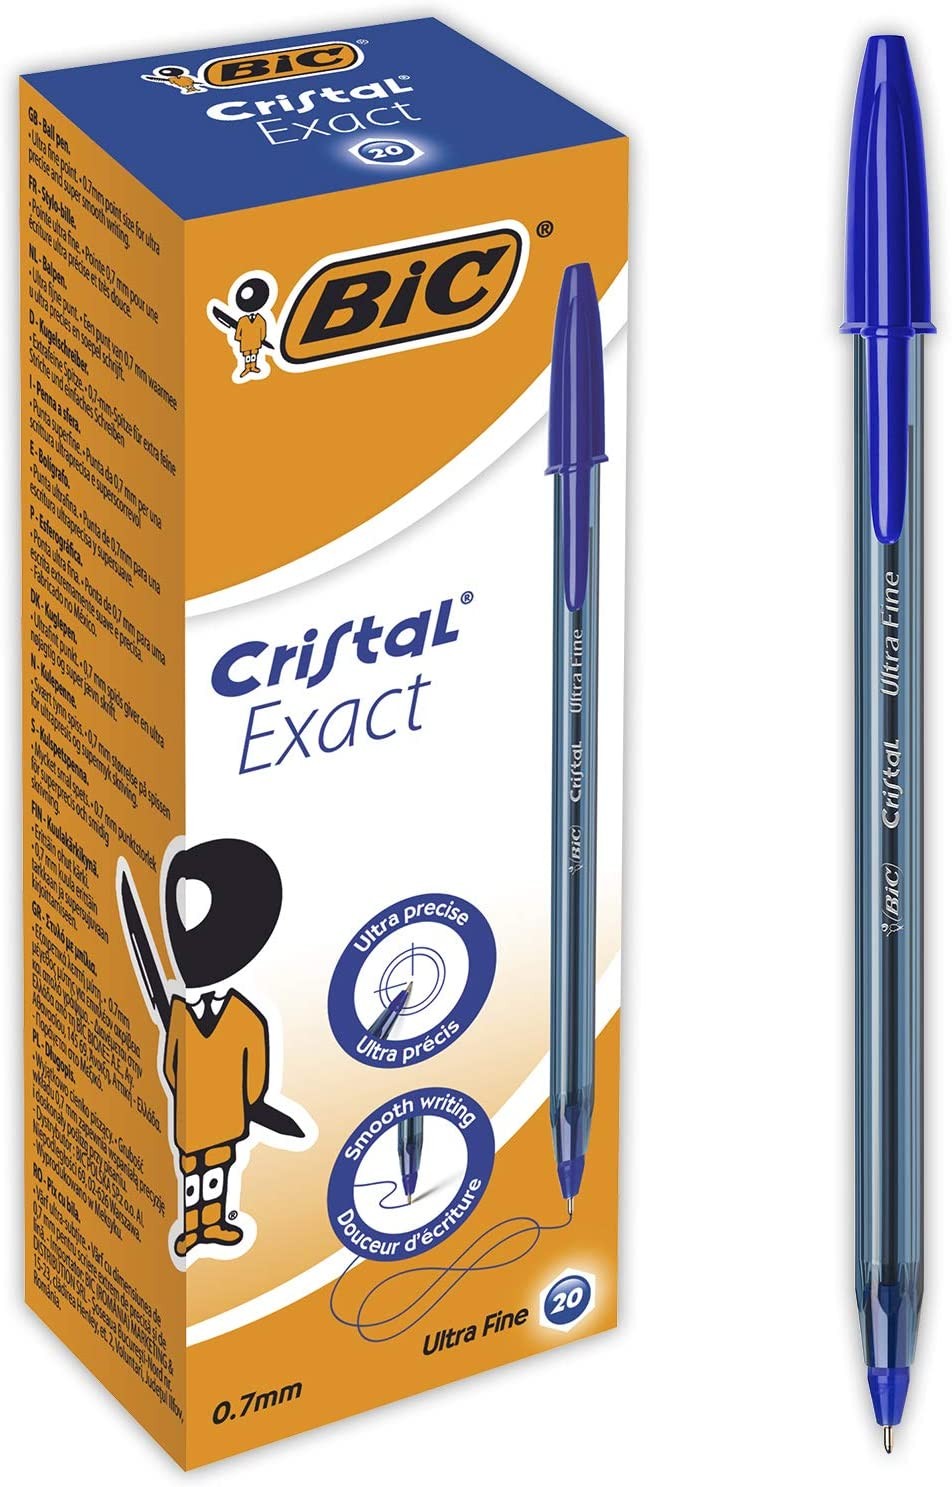 Recharge stylo-bille Bic Cristal bleu - pointe moyenne - Ethikit